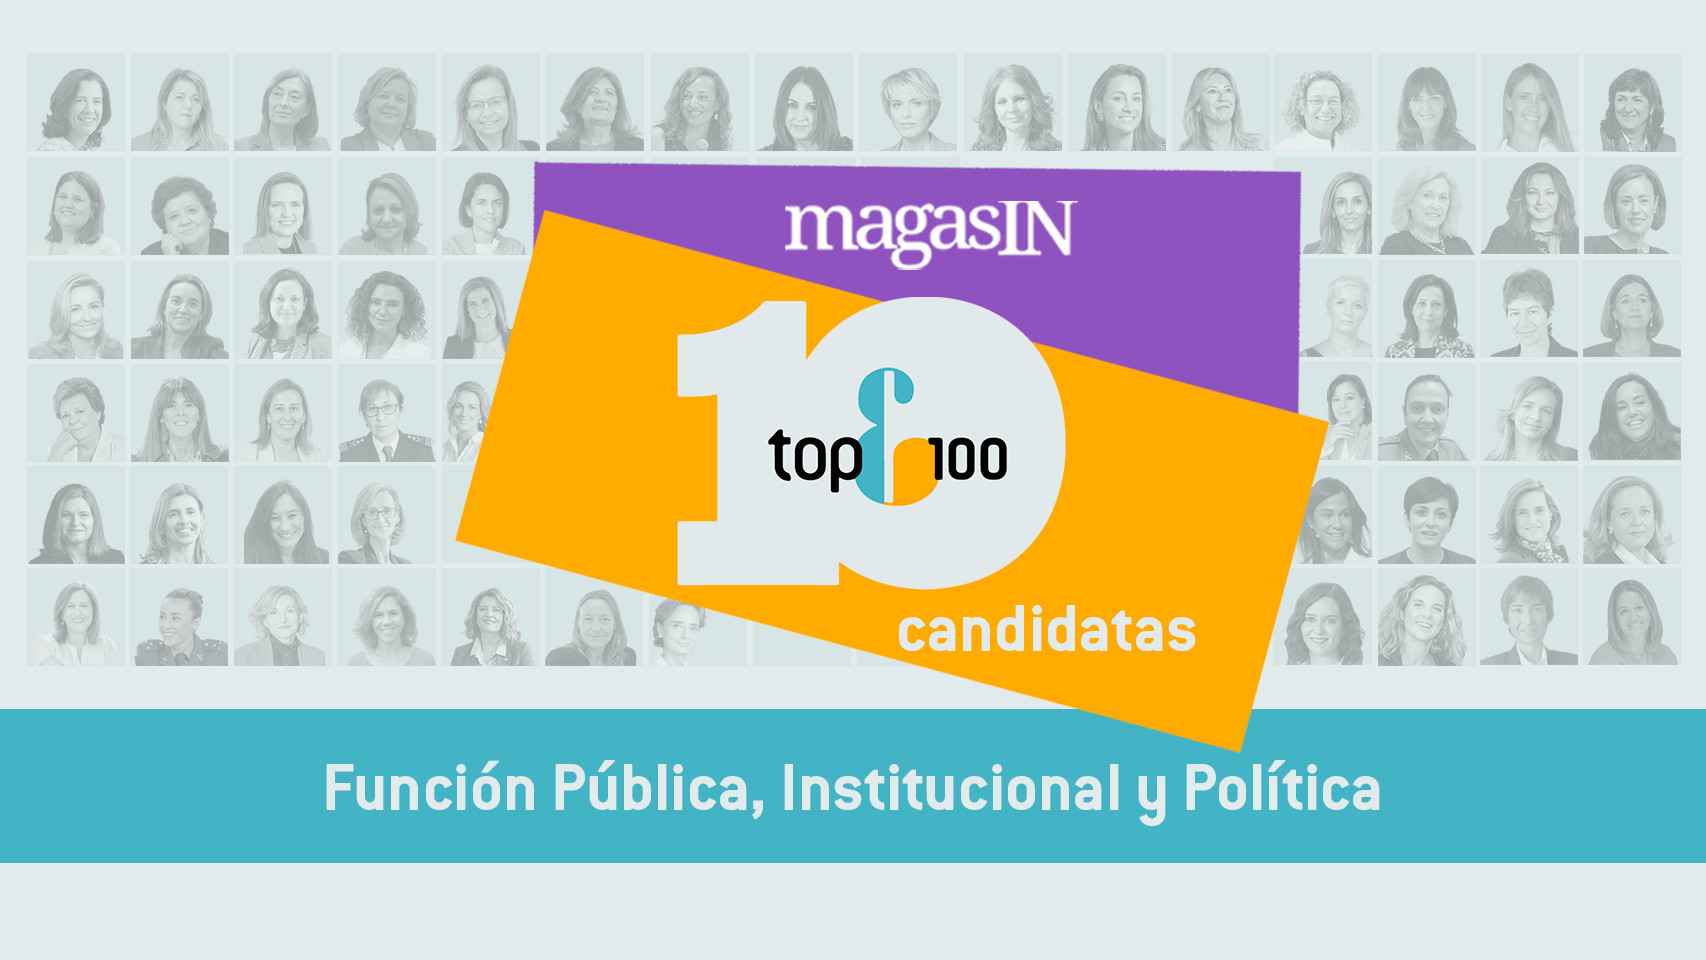 Las candidatas para Función Pública, Institucional y Política a las TOP 100